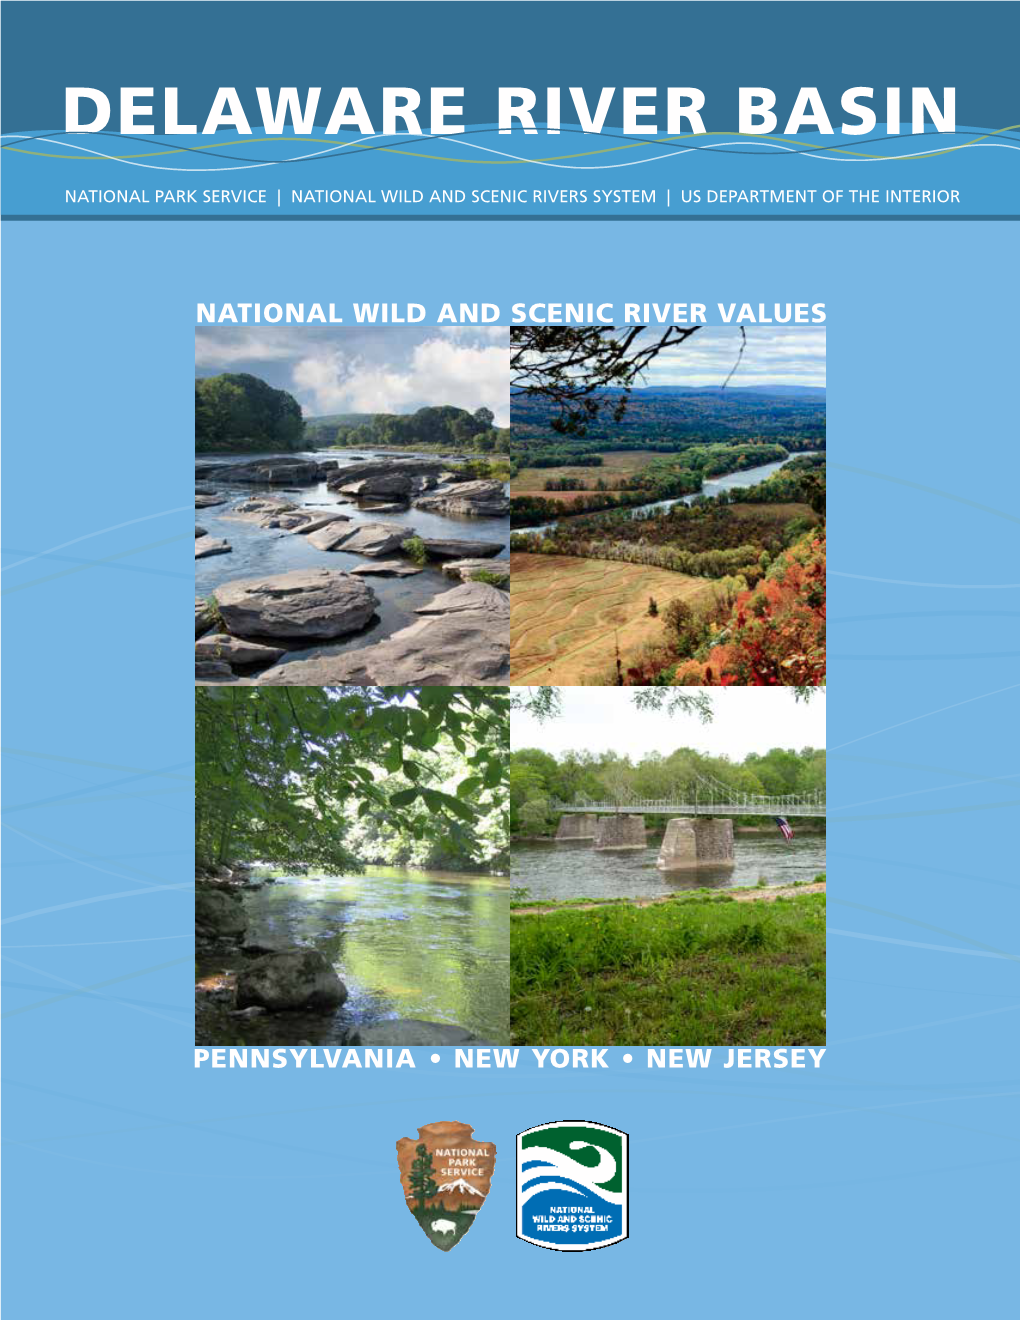 Delaware River Basin Wild and Scenic River Values